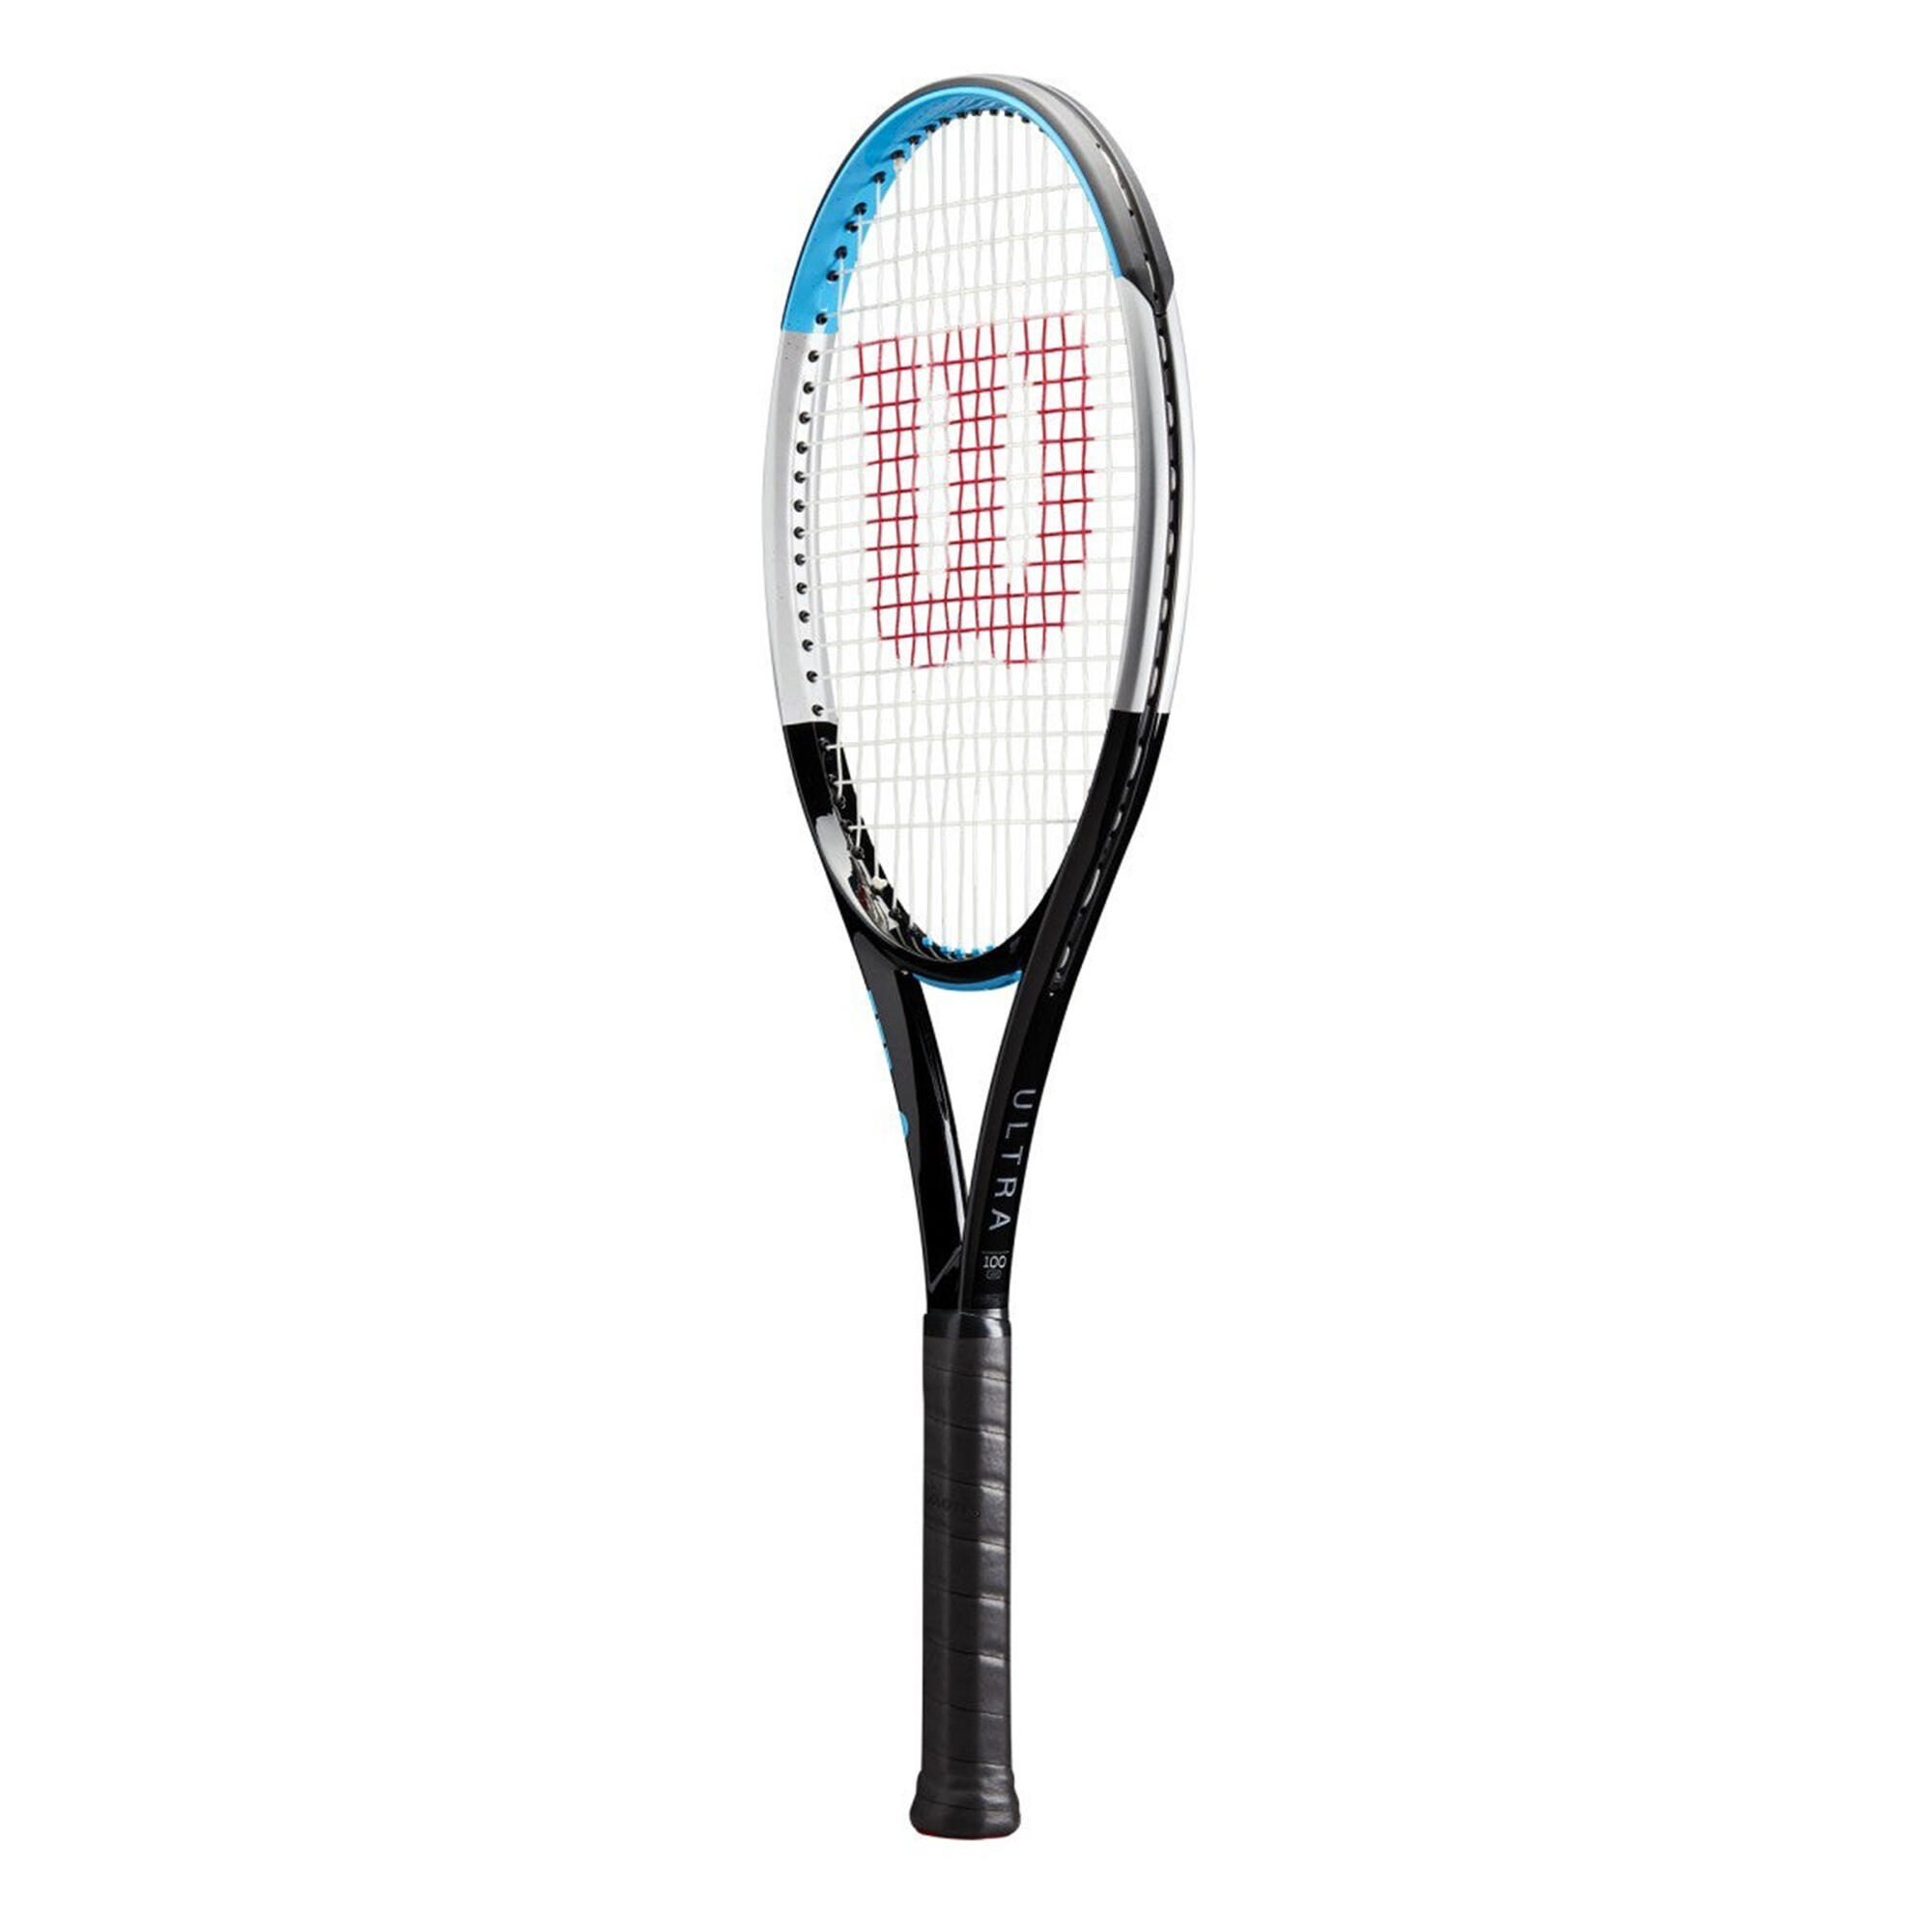 Adult Unstrung Tennis Racket Ultra 100 V3.0 - Black/Blue